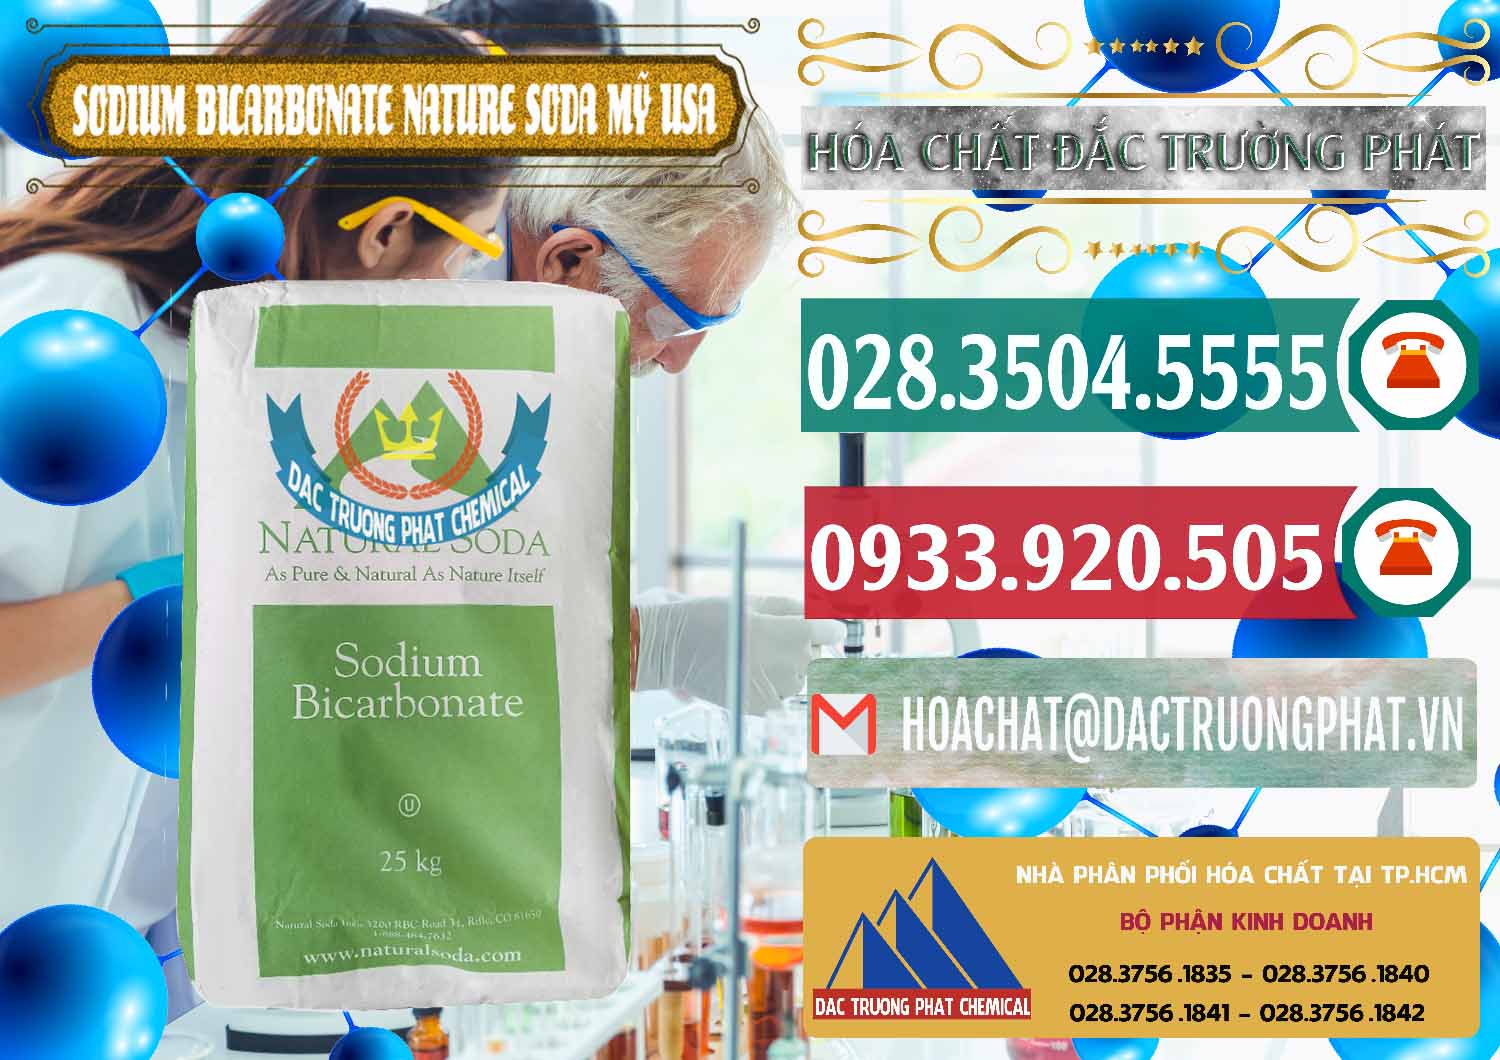 Nơi chuyên kinh doanh ( bán ) Sodium Bicarbonate – Bicar NaHCO3 Food Grade Nature Soda Mỹ USA - 0256 - Công ty chuyên kinh doanh và cung cấp hóa chất tại TP.HCM - muabanhoachat.vn